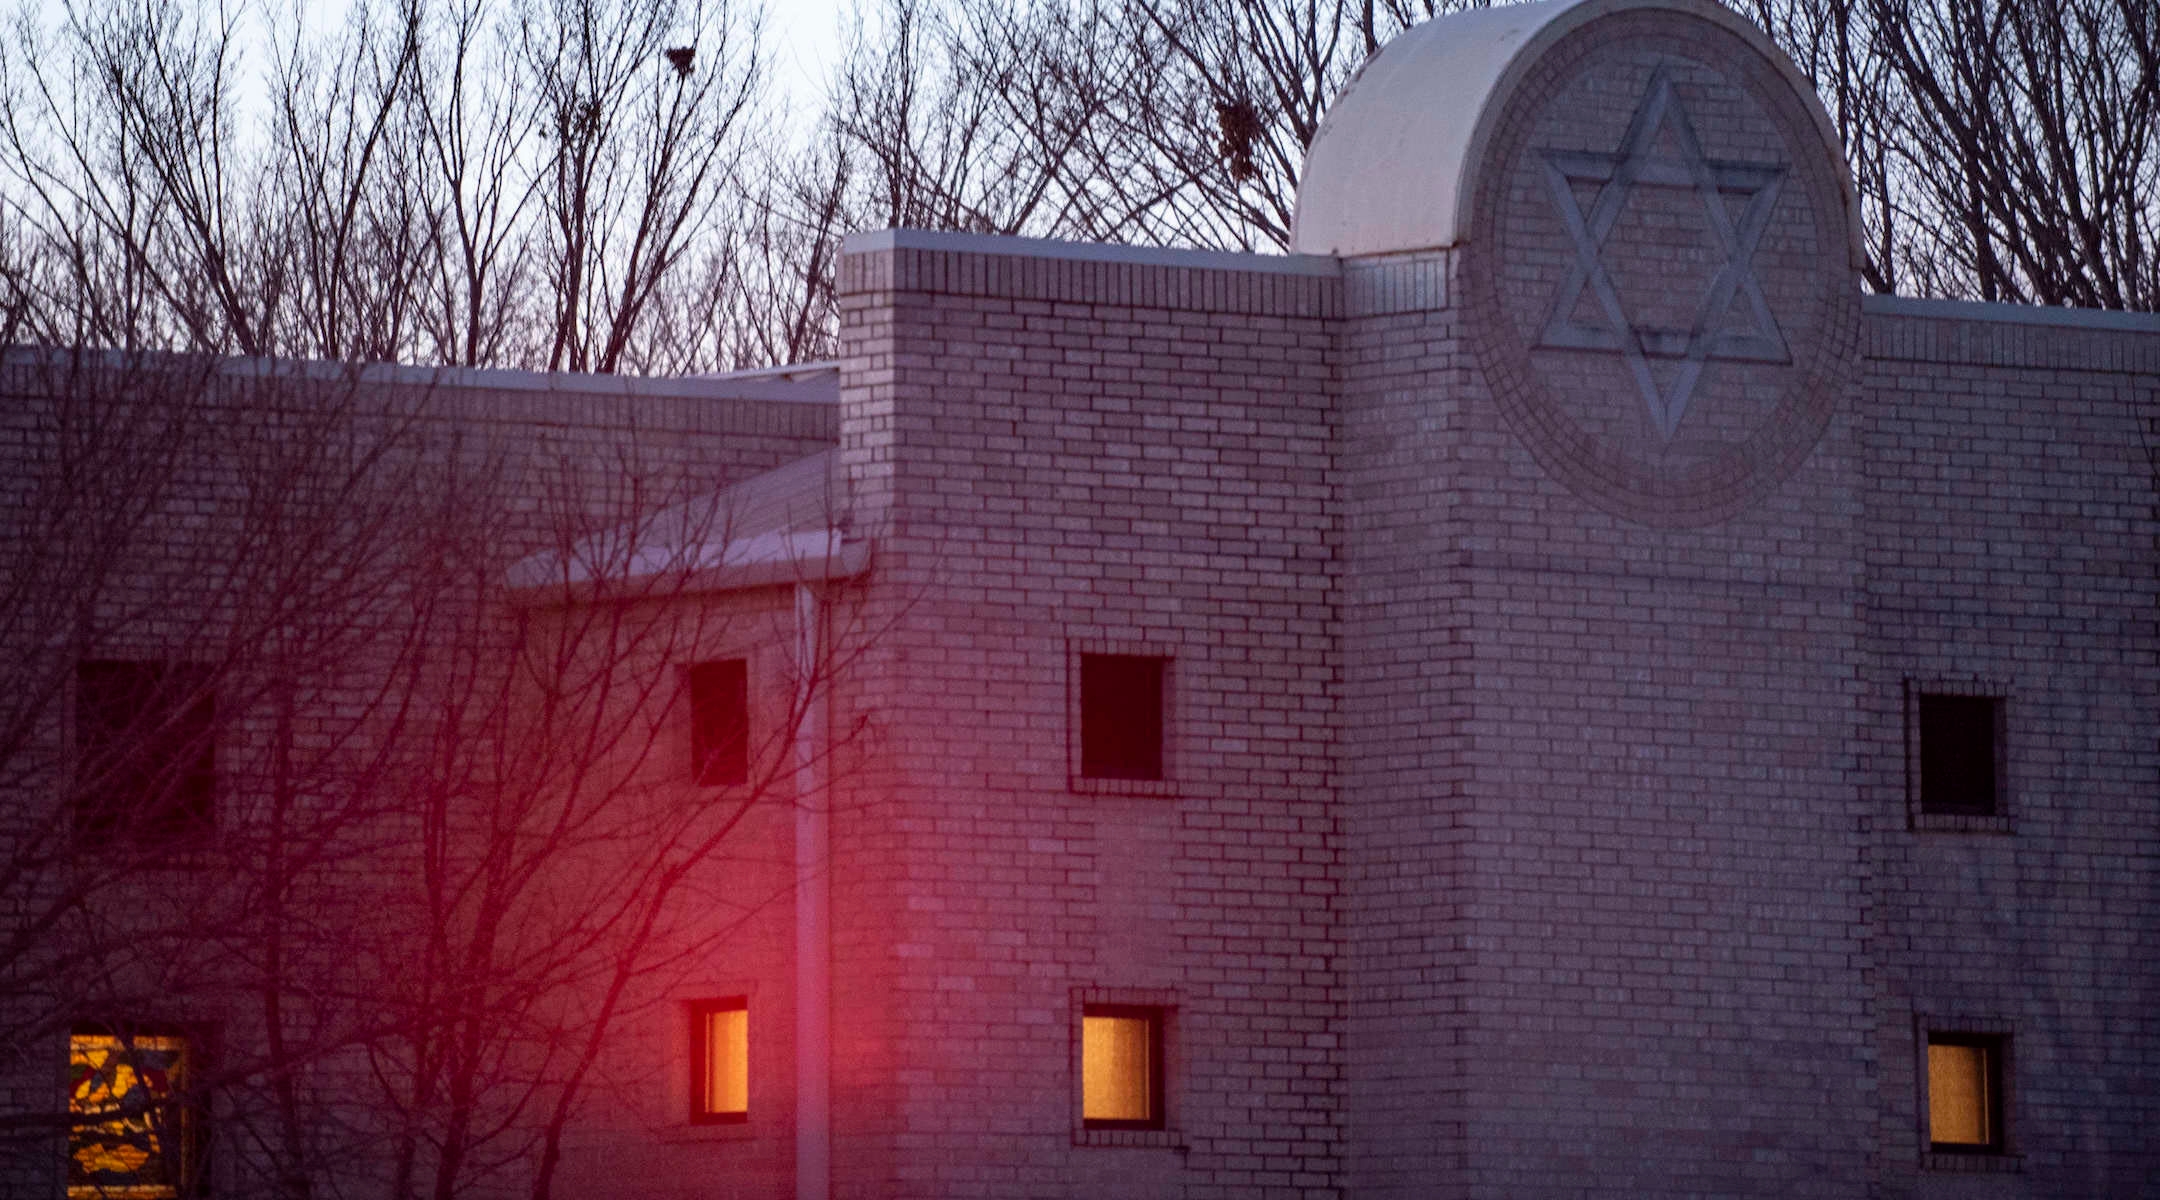 Police lights shine on Congregation Beth Israel synagogue